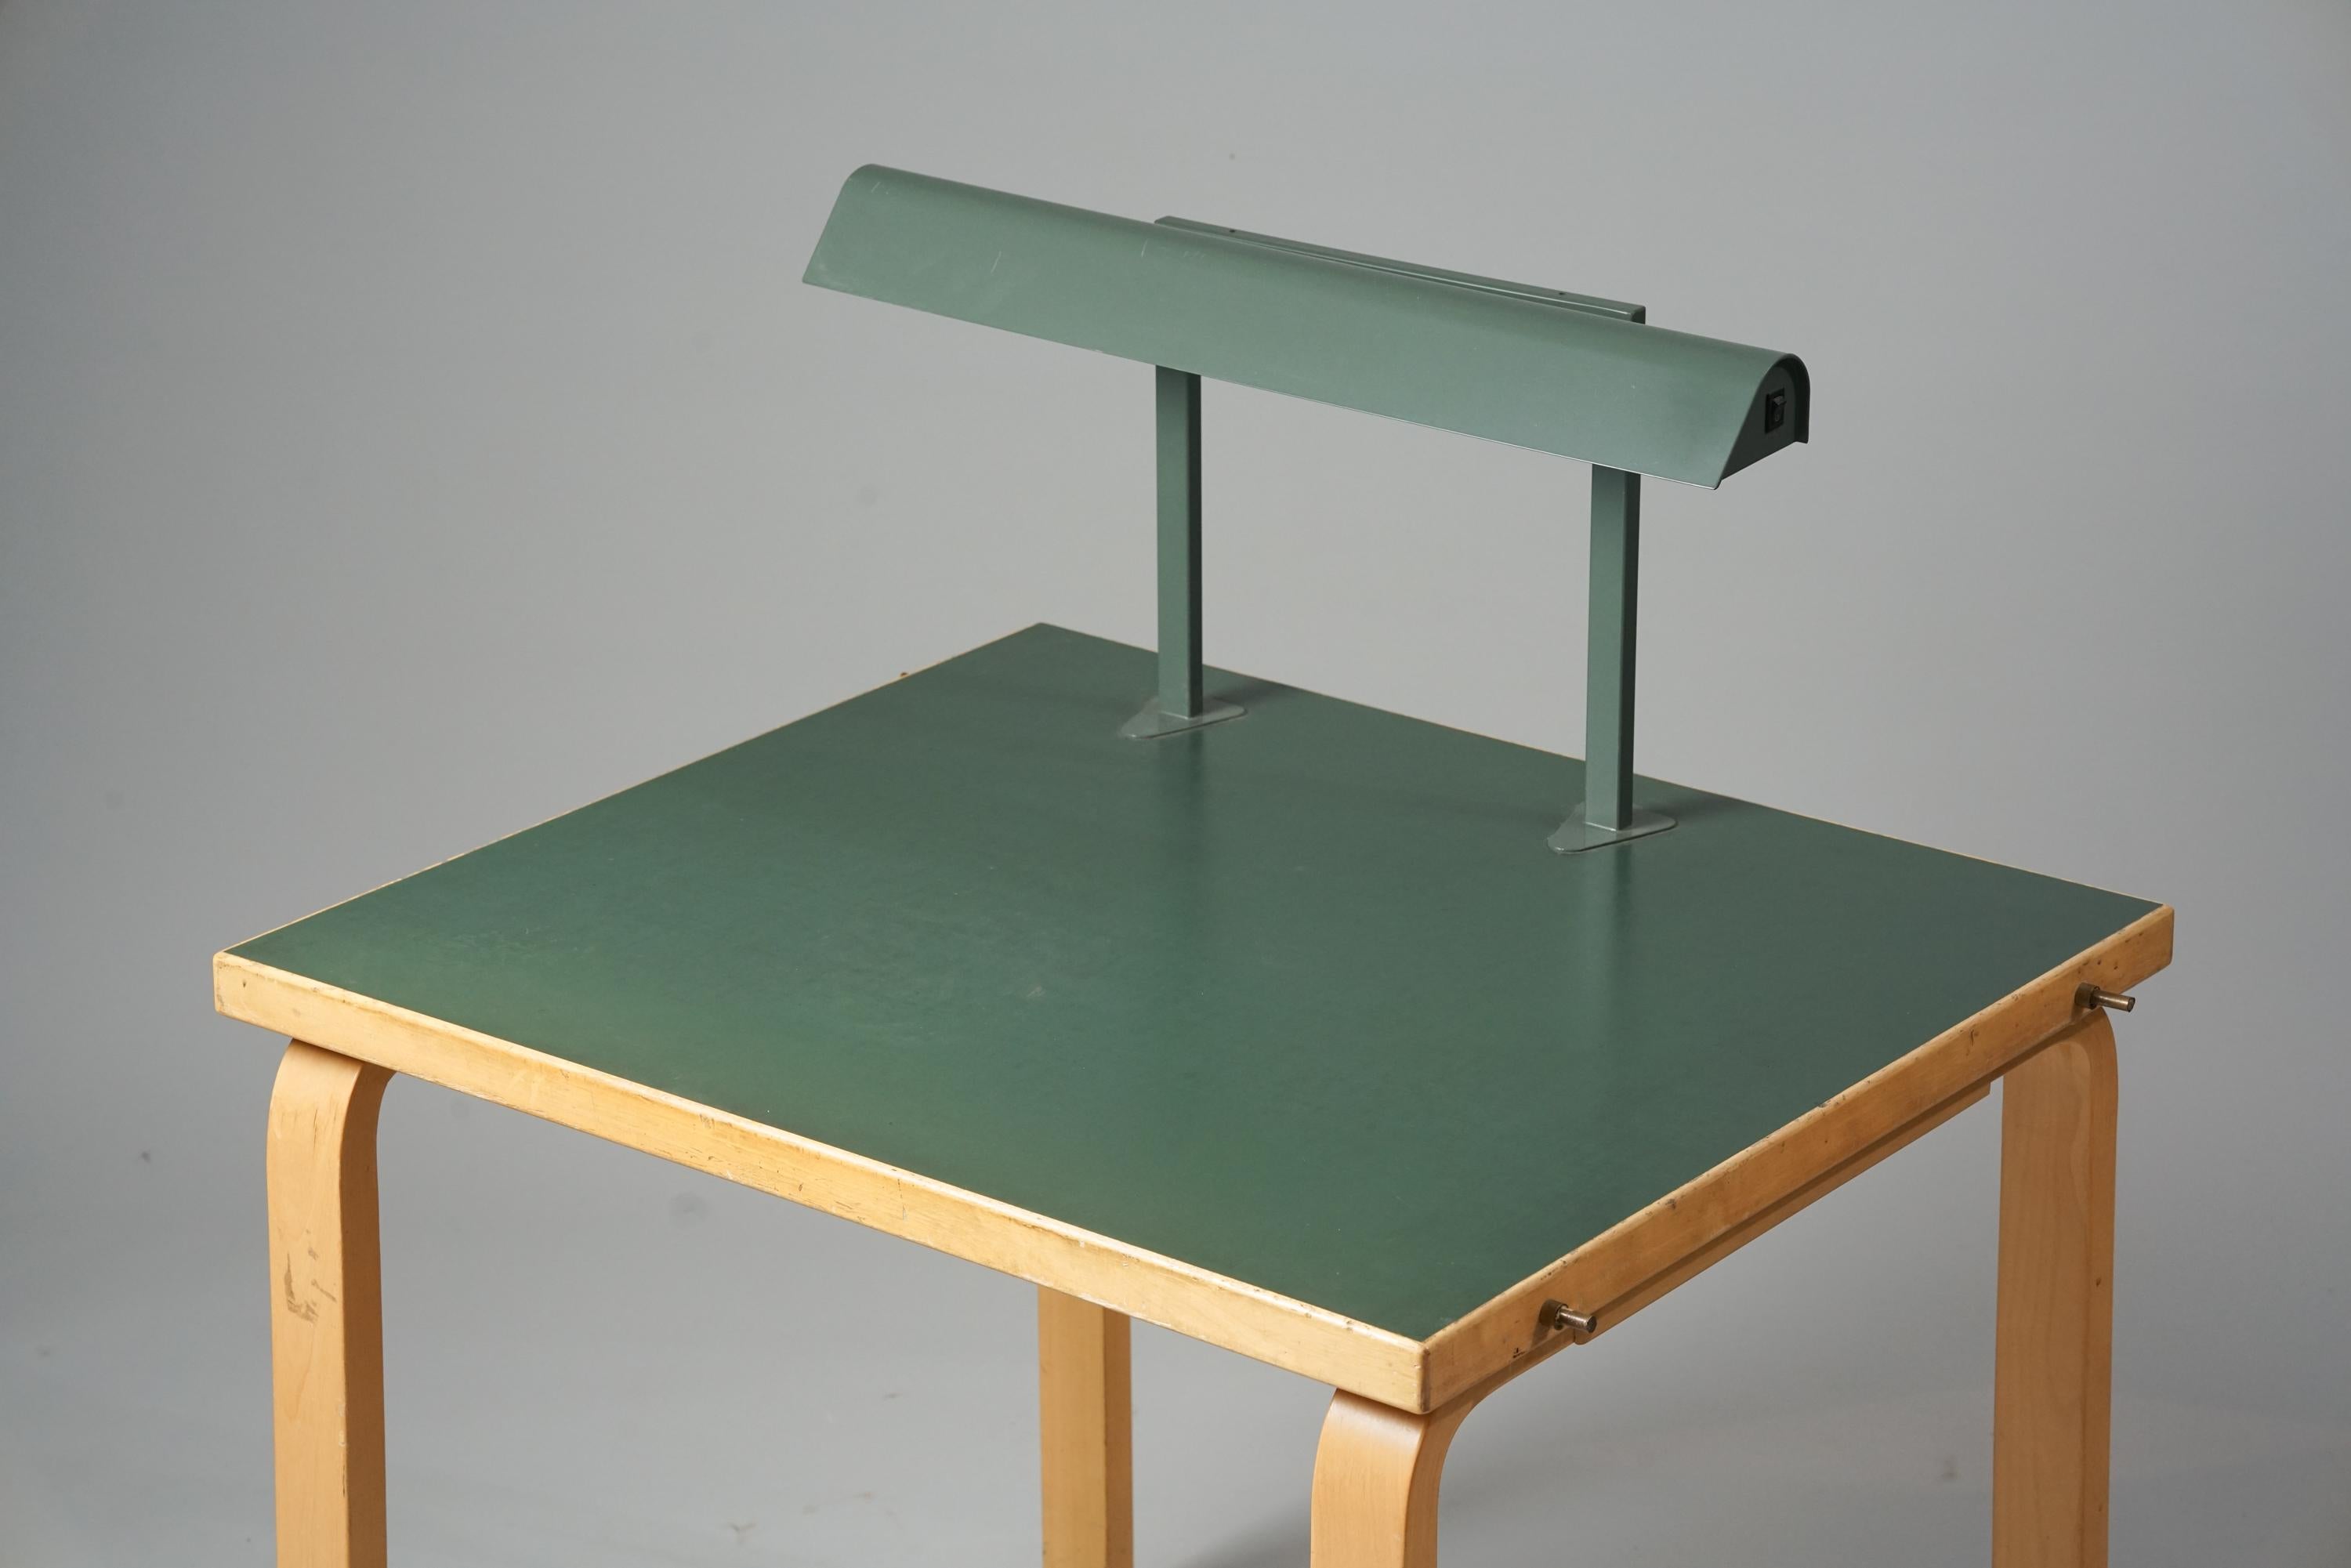 Seltener Schreibtisch, entworfen von Alvar Aalto, 1960er Jahre. Birke mit Linoleum-Tischplatte. Später mit der Leselampe ergänzt. Der Schreibtisch stammt von der Technischen Universität Otaniemi. Dokumentiert. Guter Vintage-Zustand, leichte Patina